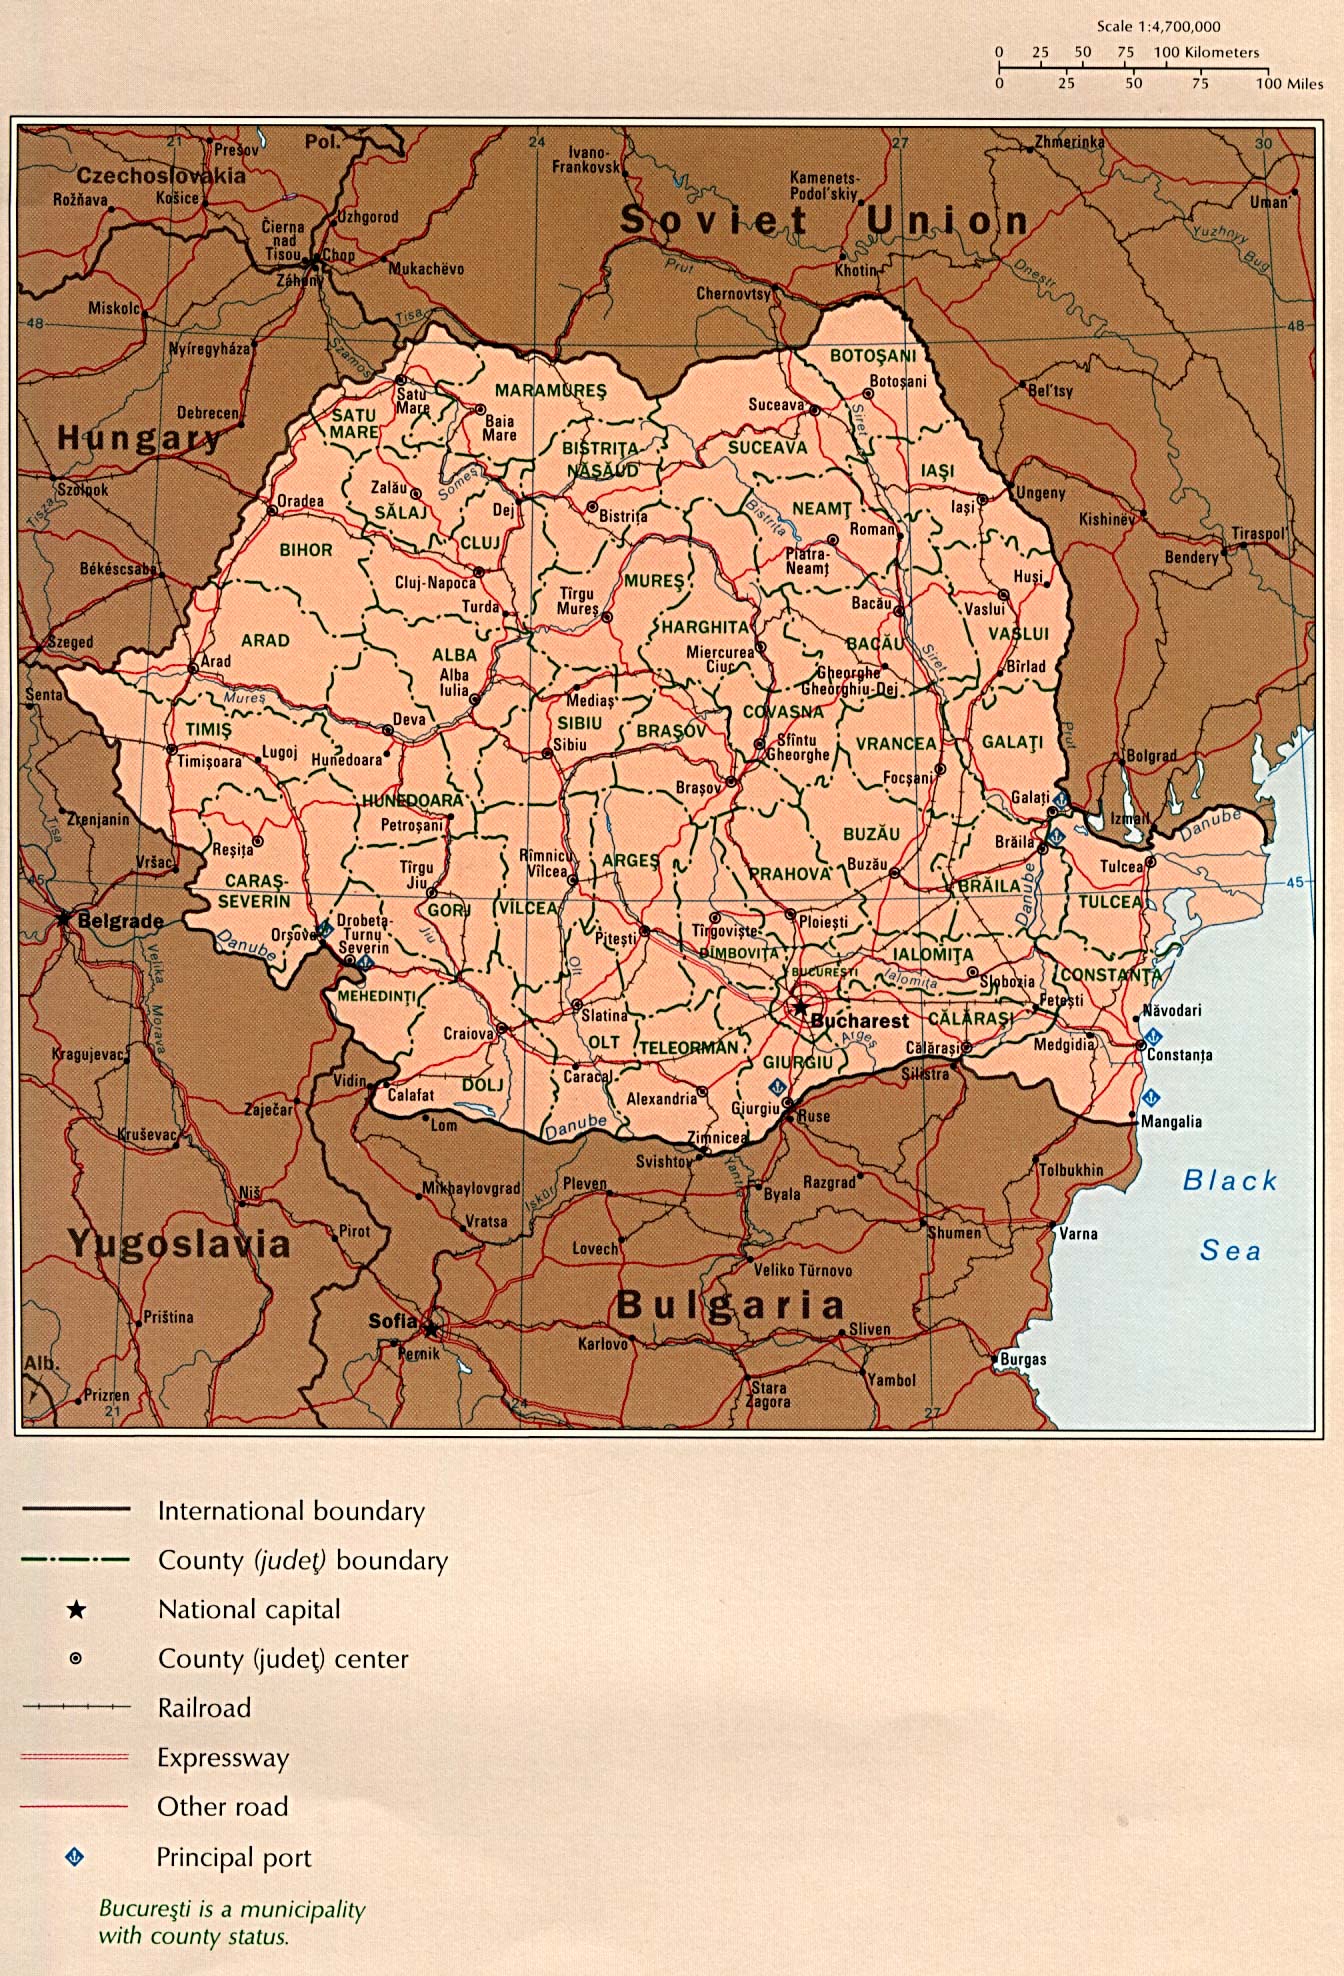 Mapa Politico de Rumania